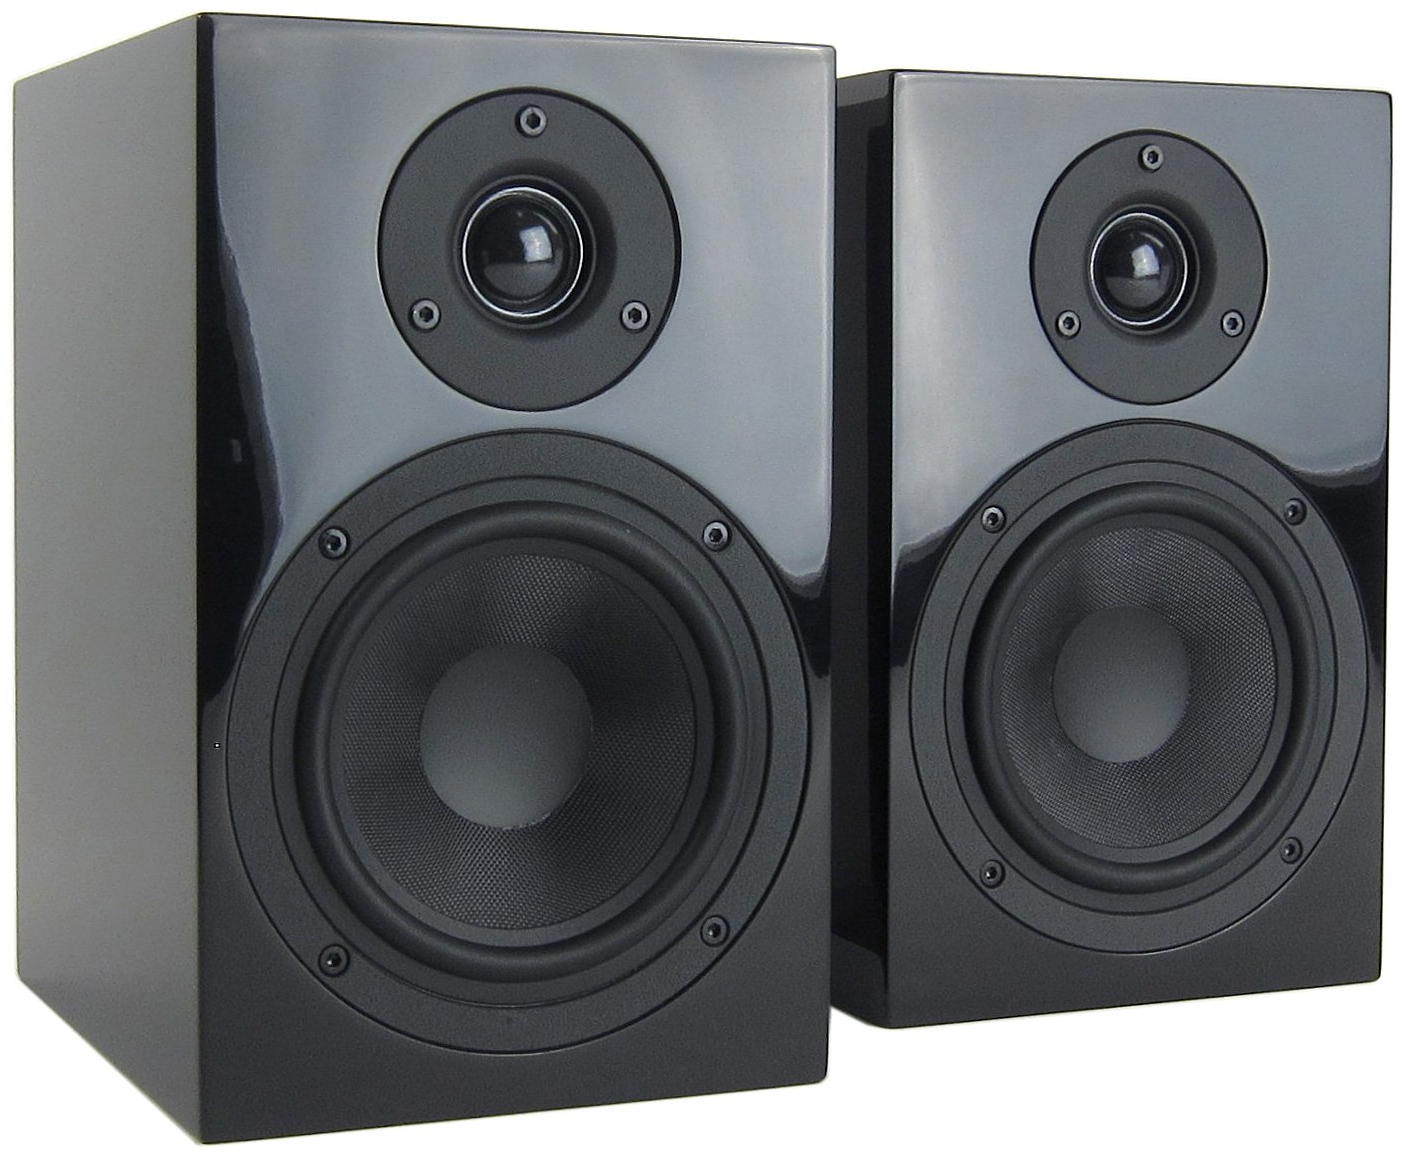 Полочная акустика Pro-Ject Speaker Box 5 black risenke speaker mic for sepura stp9000 stp8000 stp9040 stp8030 stp8035 stp8038 stp8040 stp8080 stp8100 stp8200 stp9100 stp9200